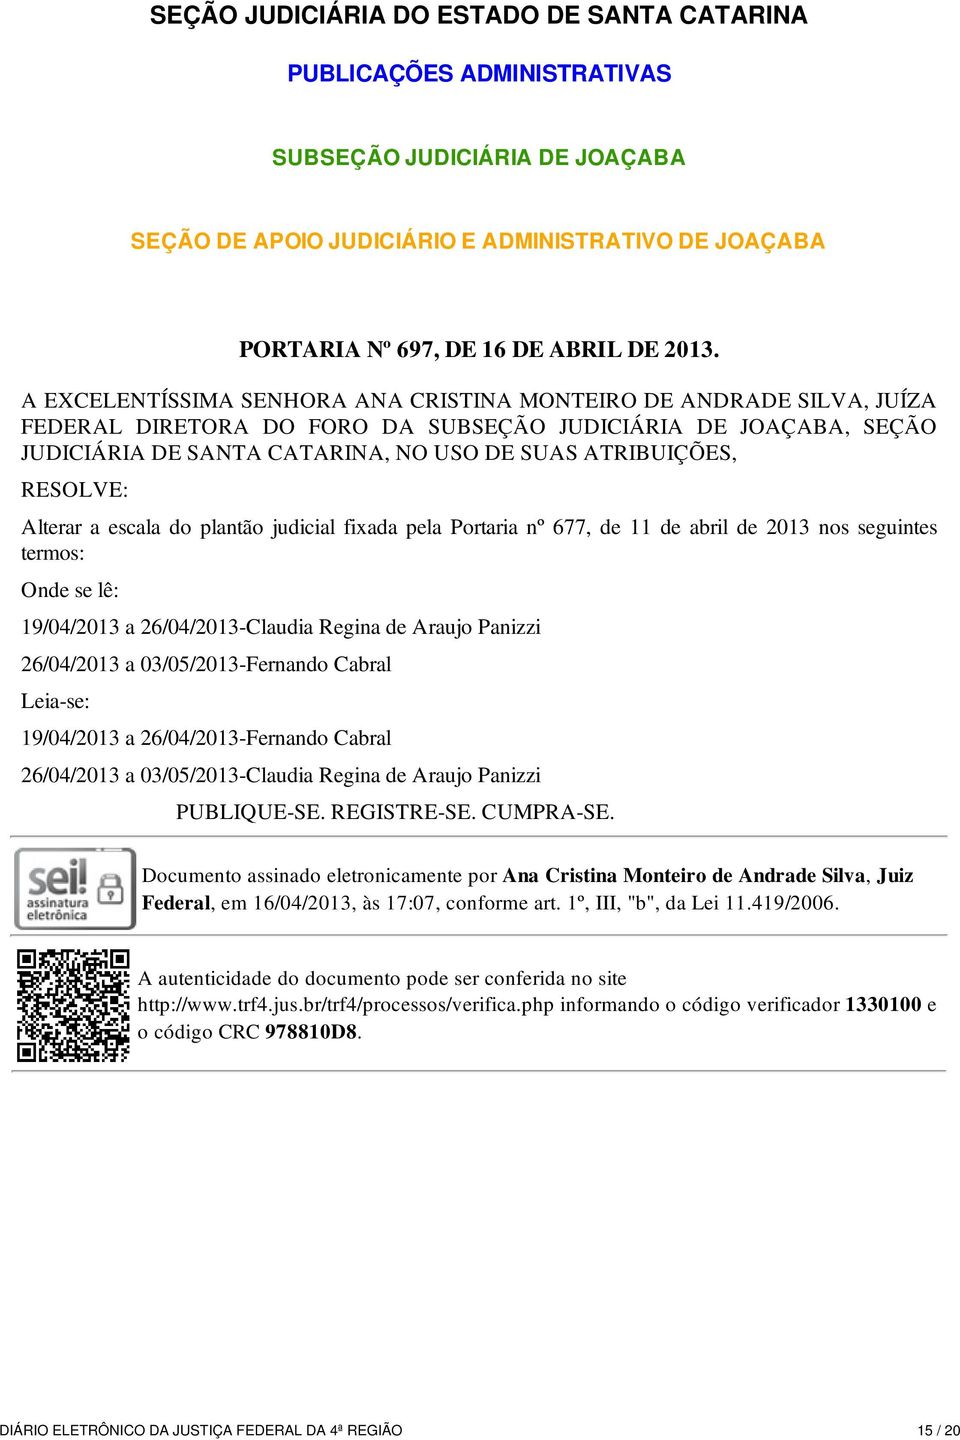 RESOLVE: Alterar a escala do plantão judicial fixada pela Portaria nº 677, de 11 de abril de 2013 nos seguintes termos: Onde se lê: 19/04/2013 a 26/04/2013-Claudia Regina de Araujo Panizzi 26/04/2013